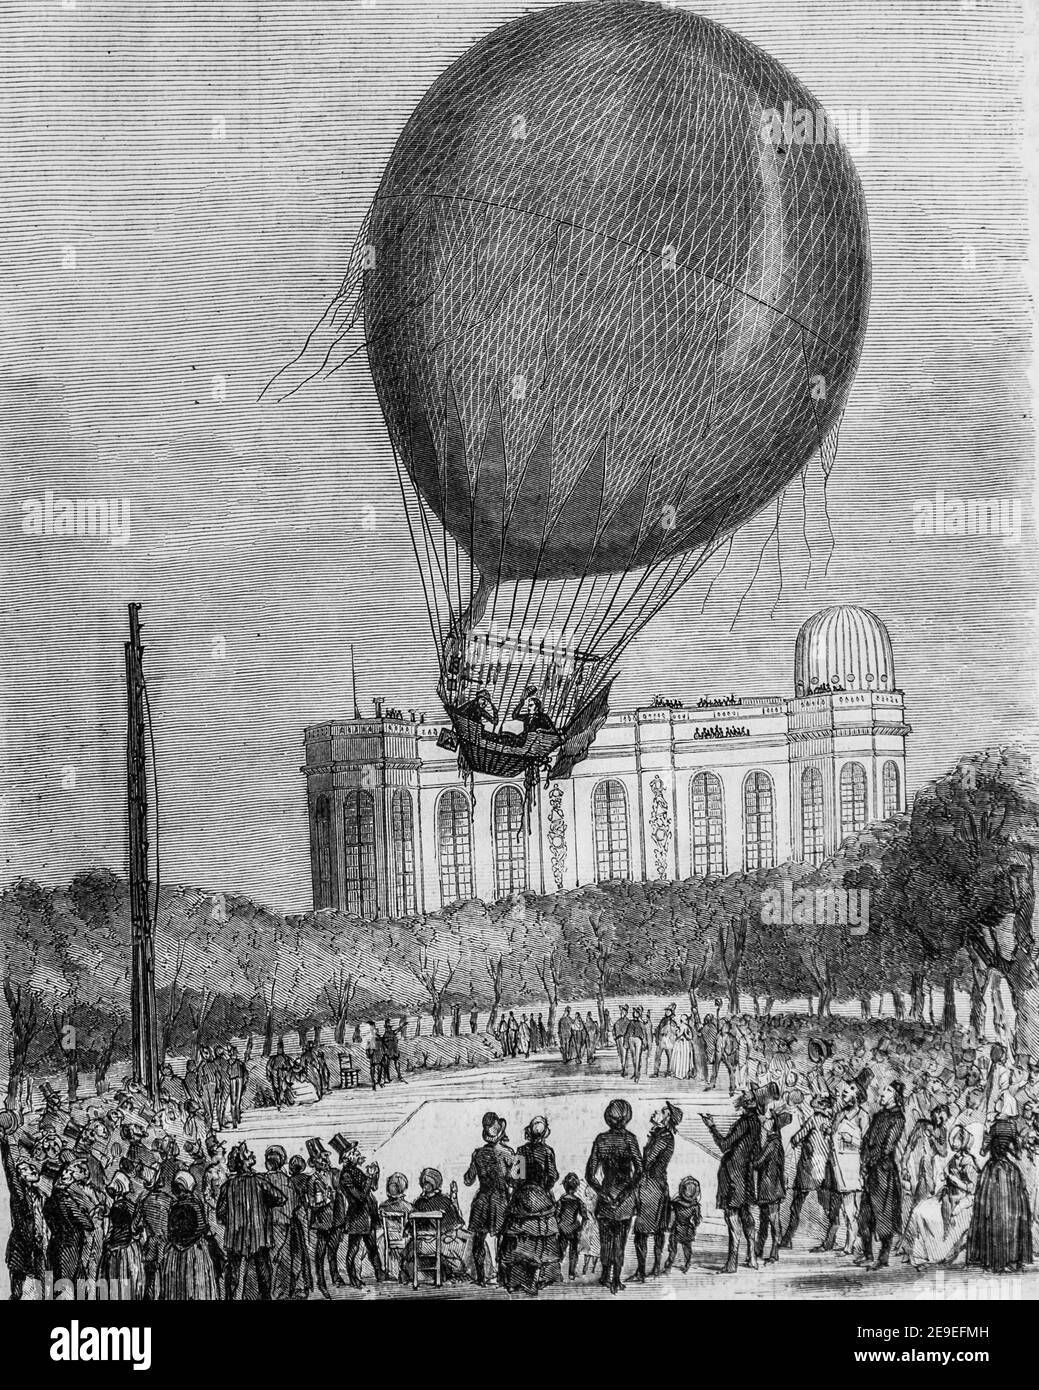 ascension de M.M. bixio et barral le 29 juin 18520, tableau de paris par edmond texier,editeur paulin et le chavalier 1853 Stock Photo